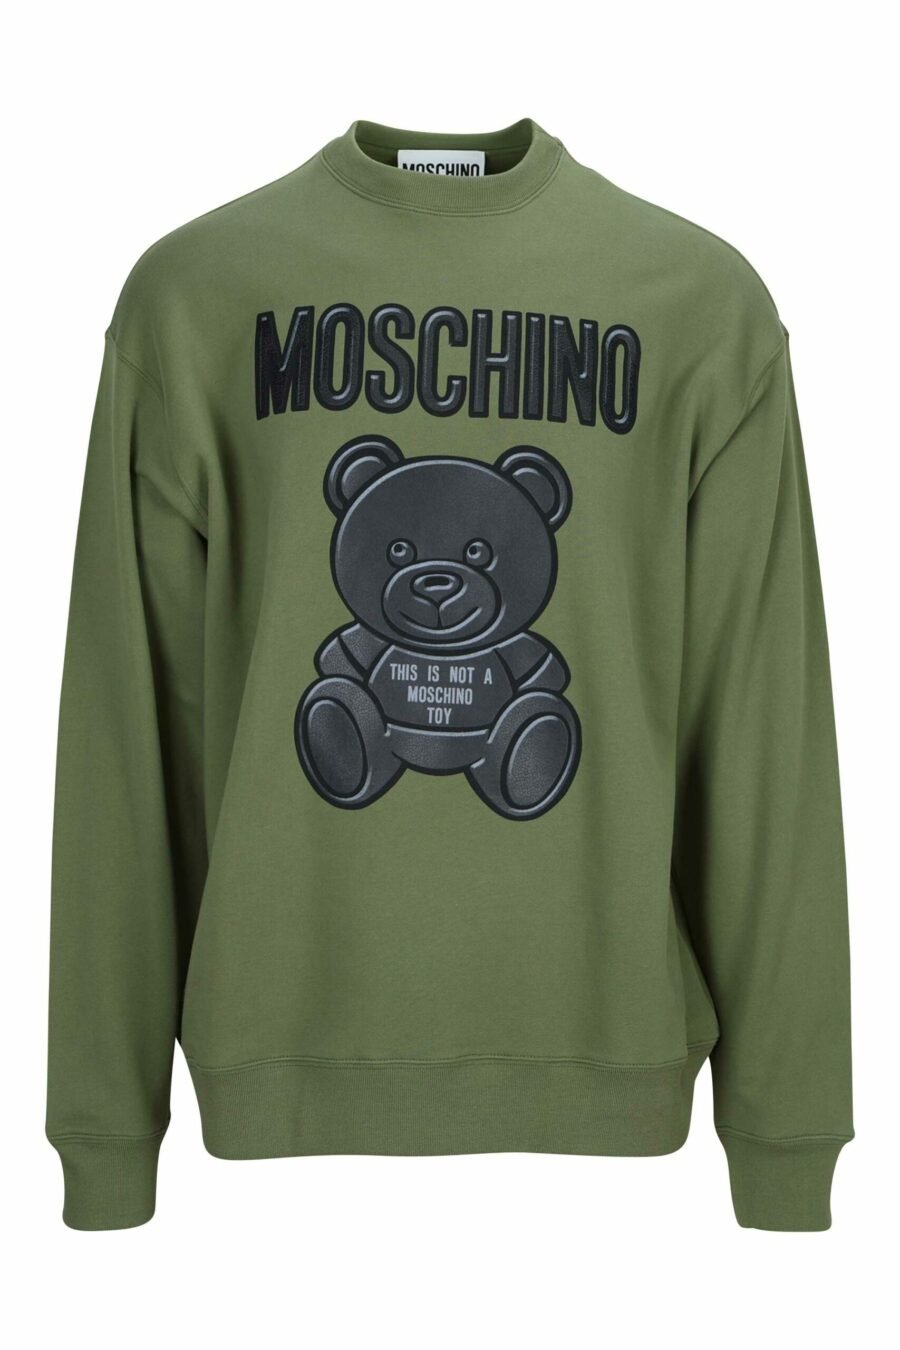 Militärgrünes Sweatshirt mit schwarzem "Teddy"-Maxilogo - 889316852639 skaliert